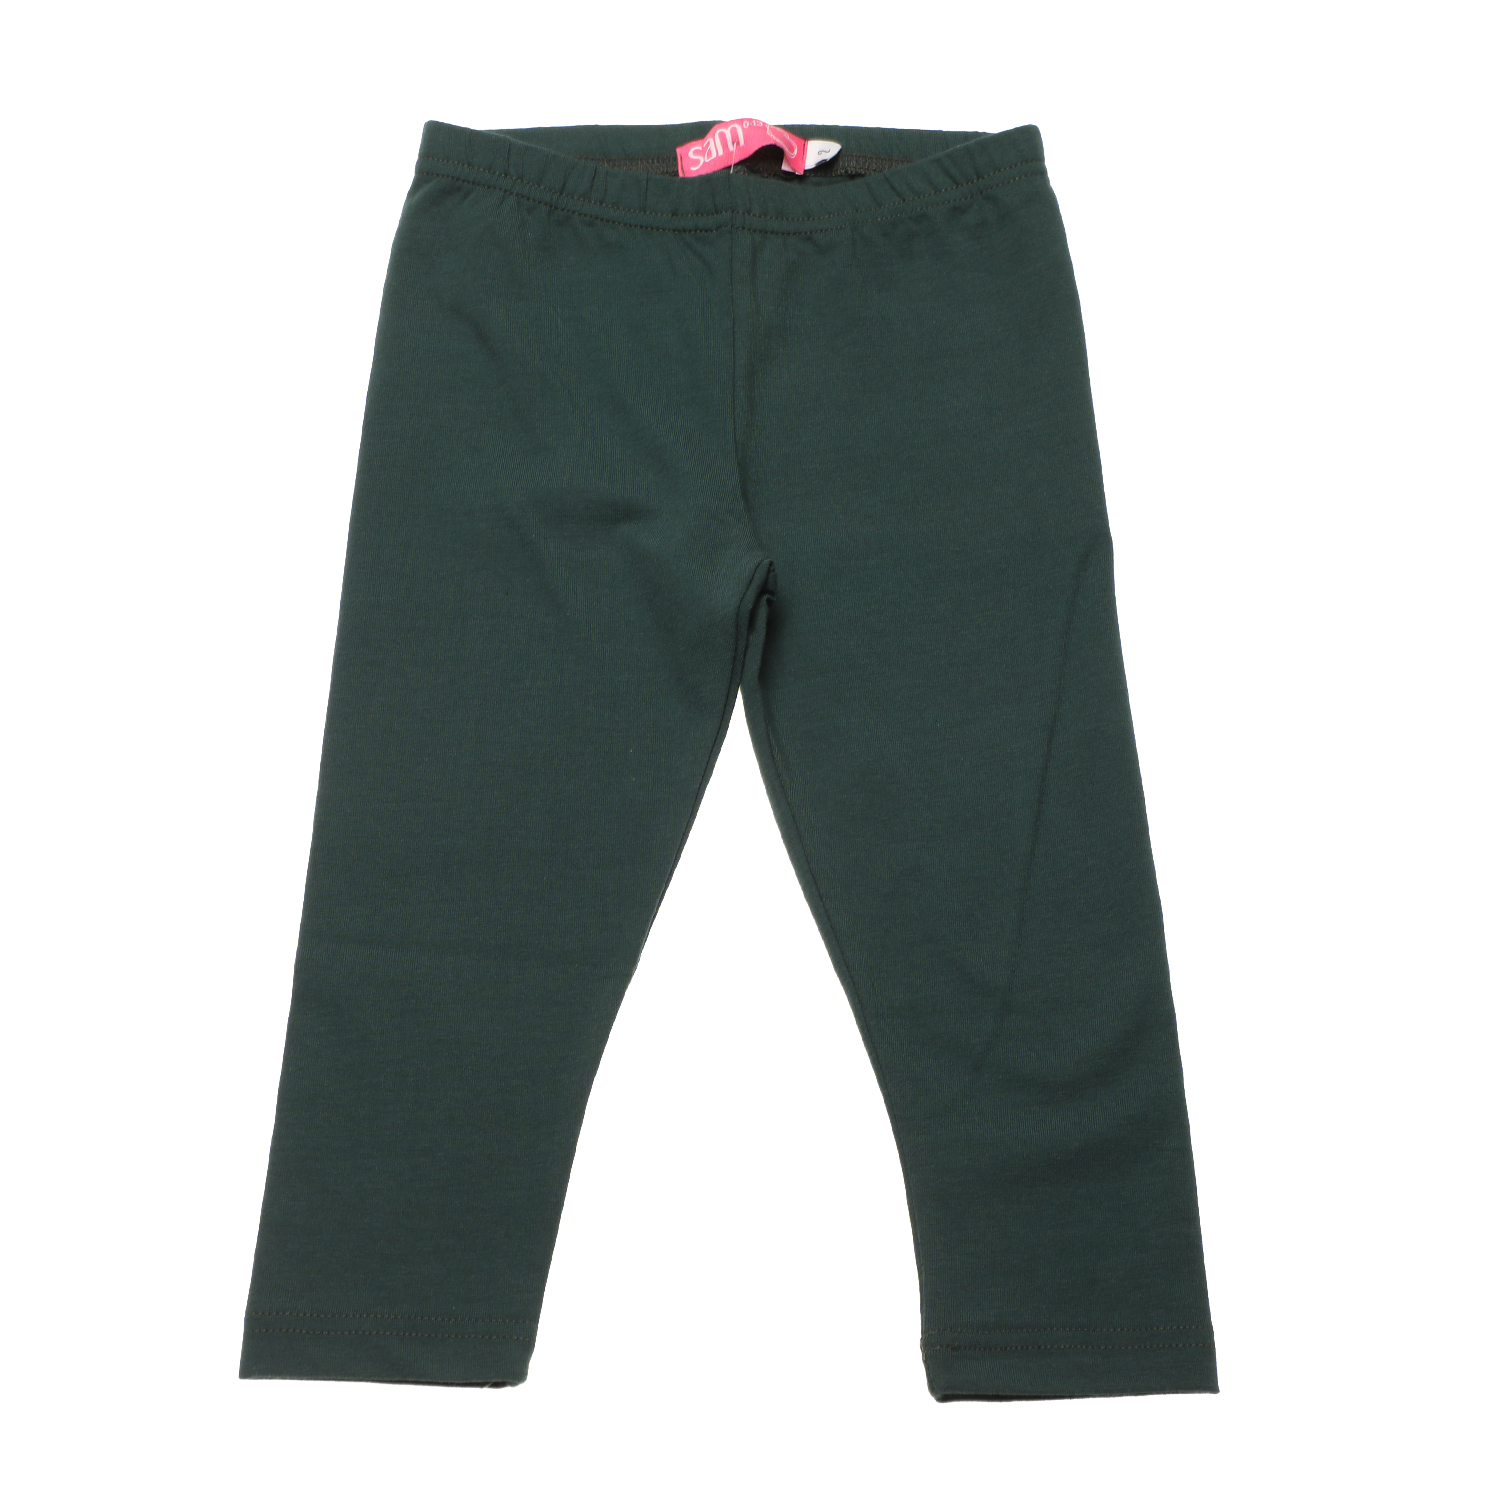 Παιδικά/Girls/Ρούχα/Παντελόνια SAM 0-13 - Παιδικό κολάν SAM 0-13 ΜΝΧ πράσινο